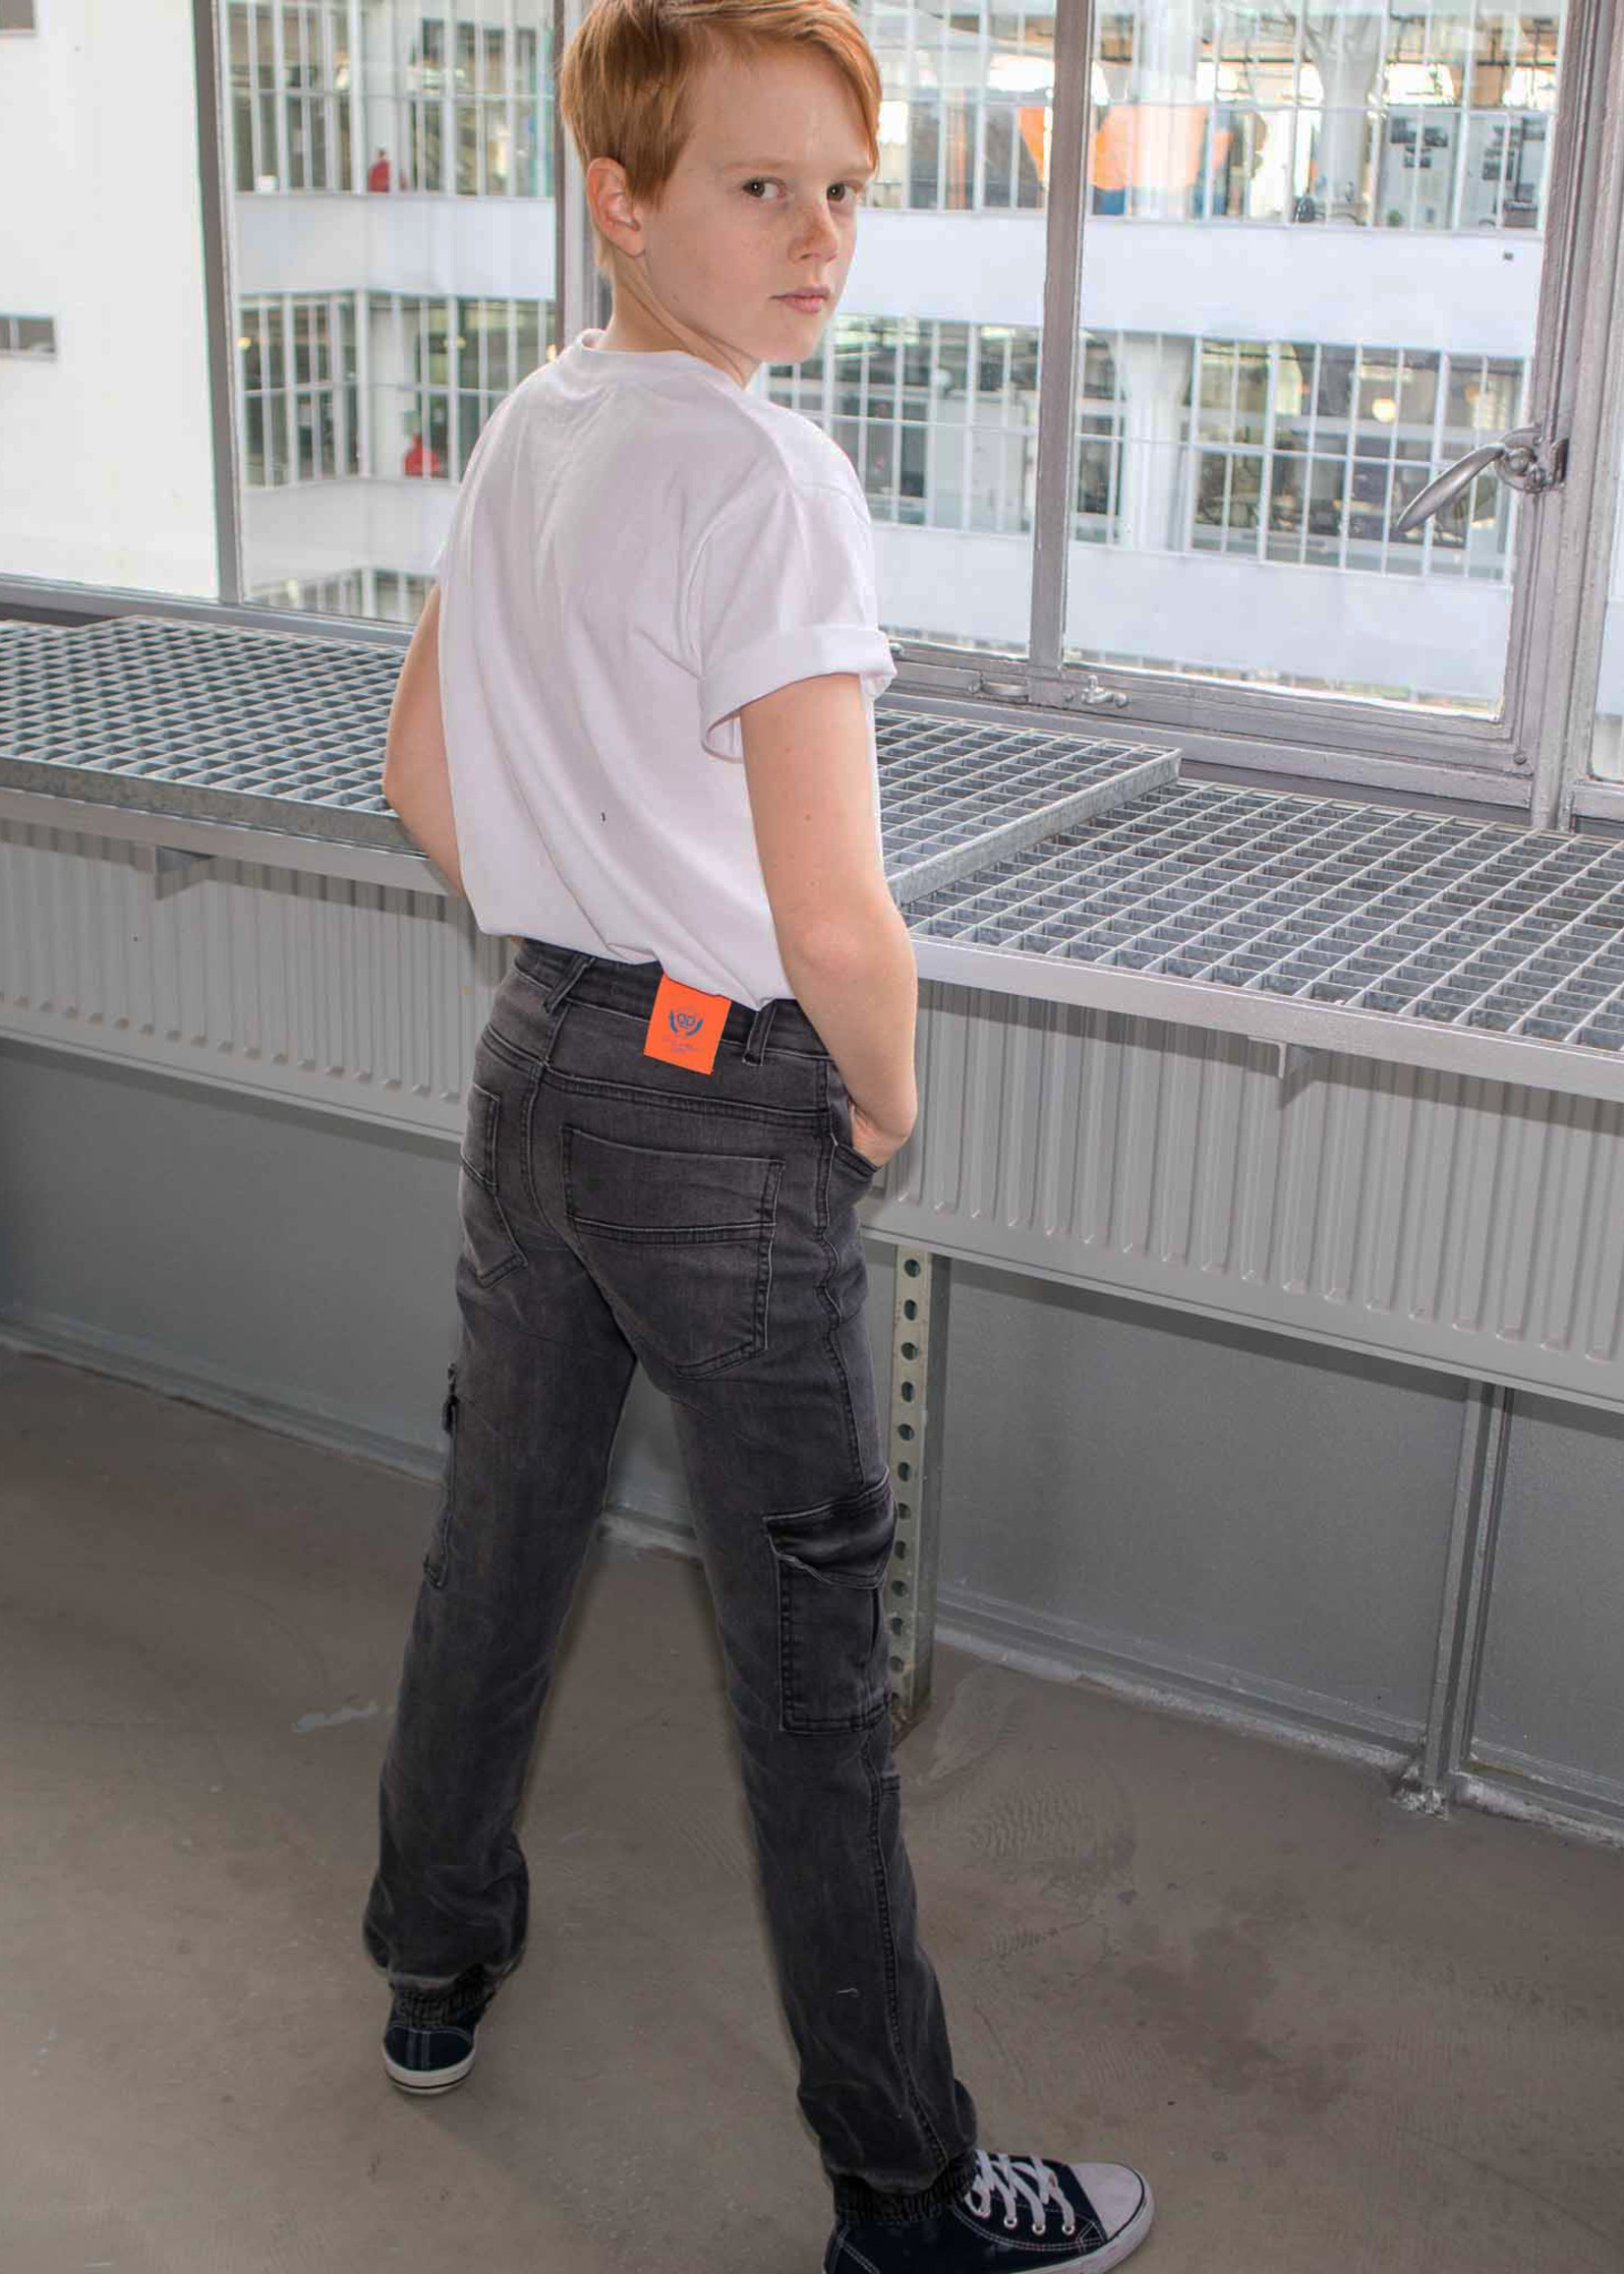 Dutch dream denim FIKIRI, SLIM FIT power stretch cargo jeans met dubbele laag stof op de knieën